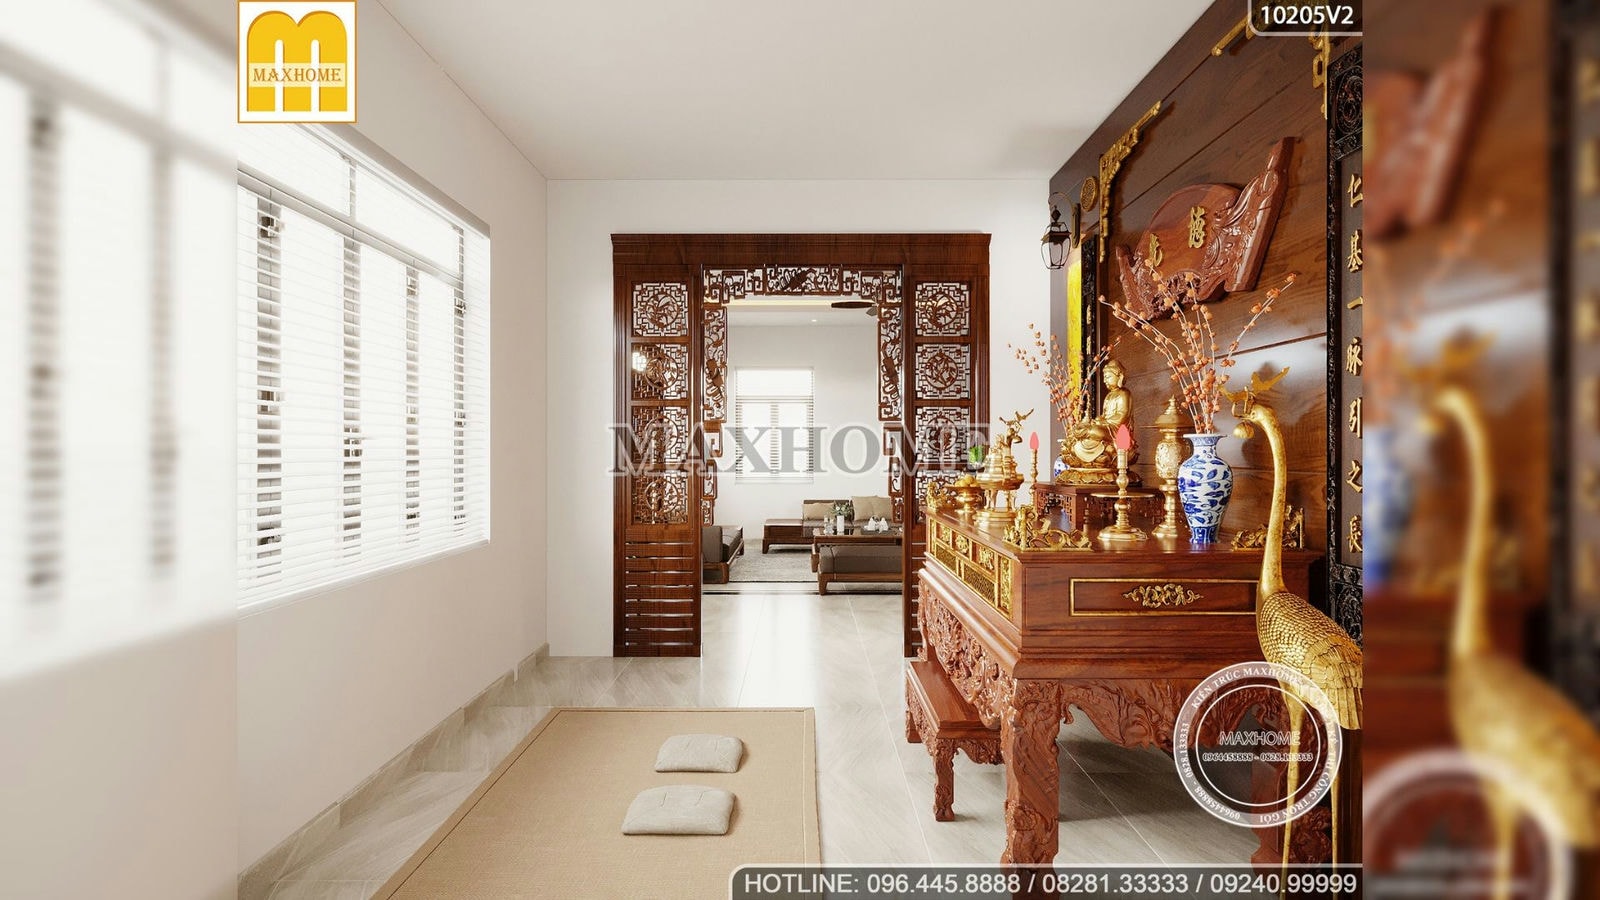 Thiết kế nội thất sang trọng cho nhà cấp 4 ở Gò Dầu, Tây Ninh | MH01705